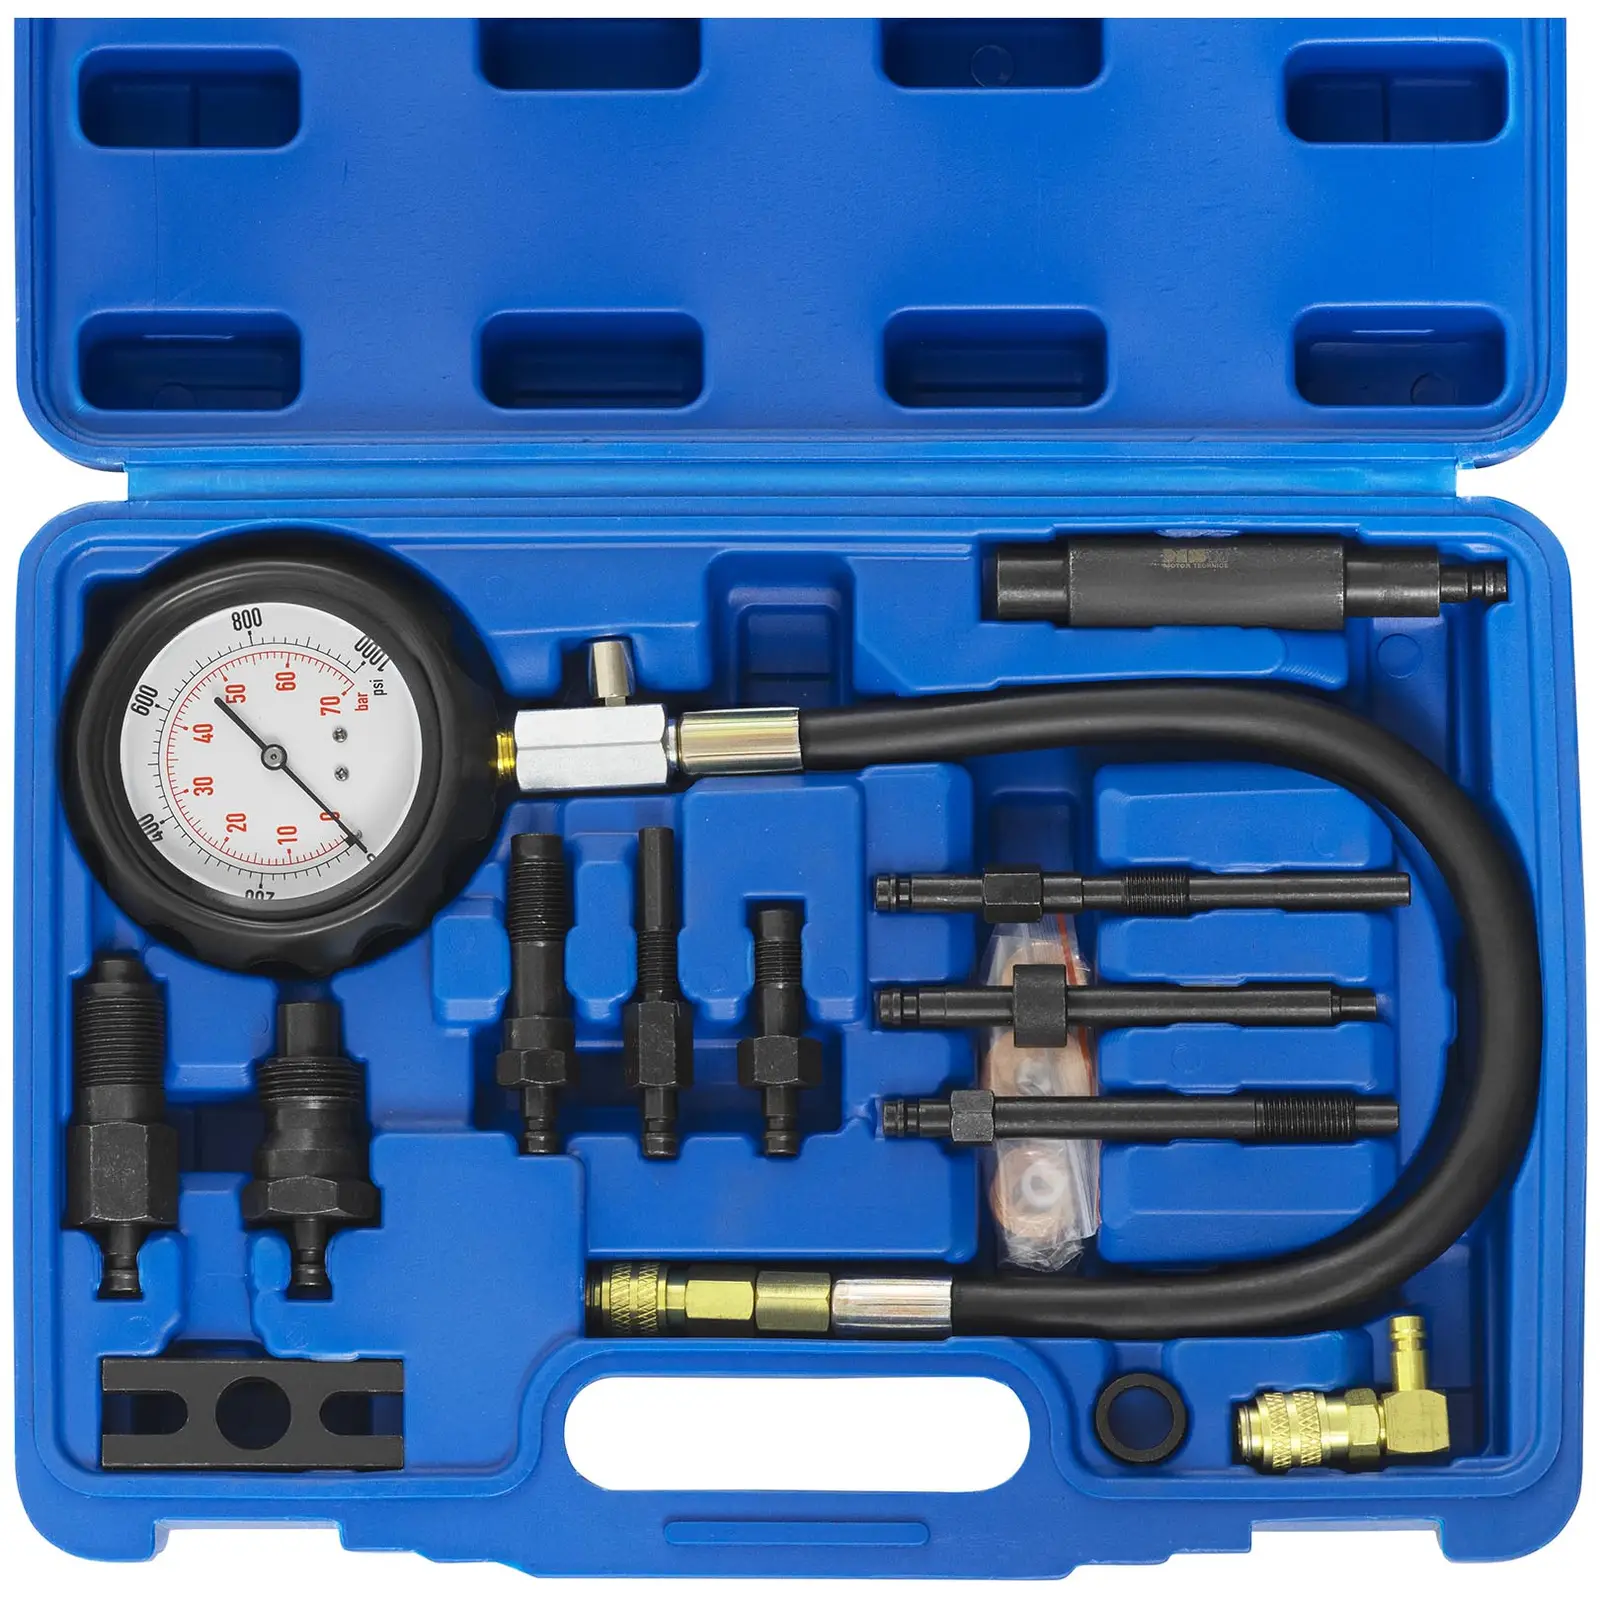 Diesel Compression Tester - 0 - 70 bar - 70 mm manometer - 42 cm hose